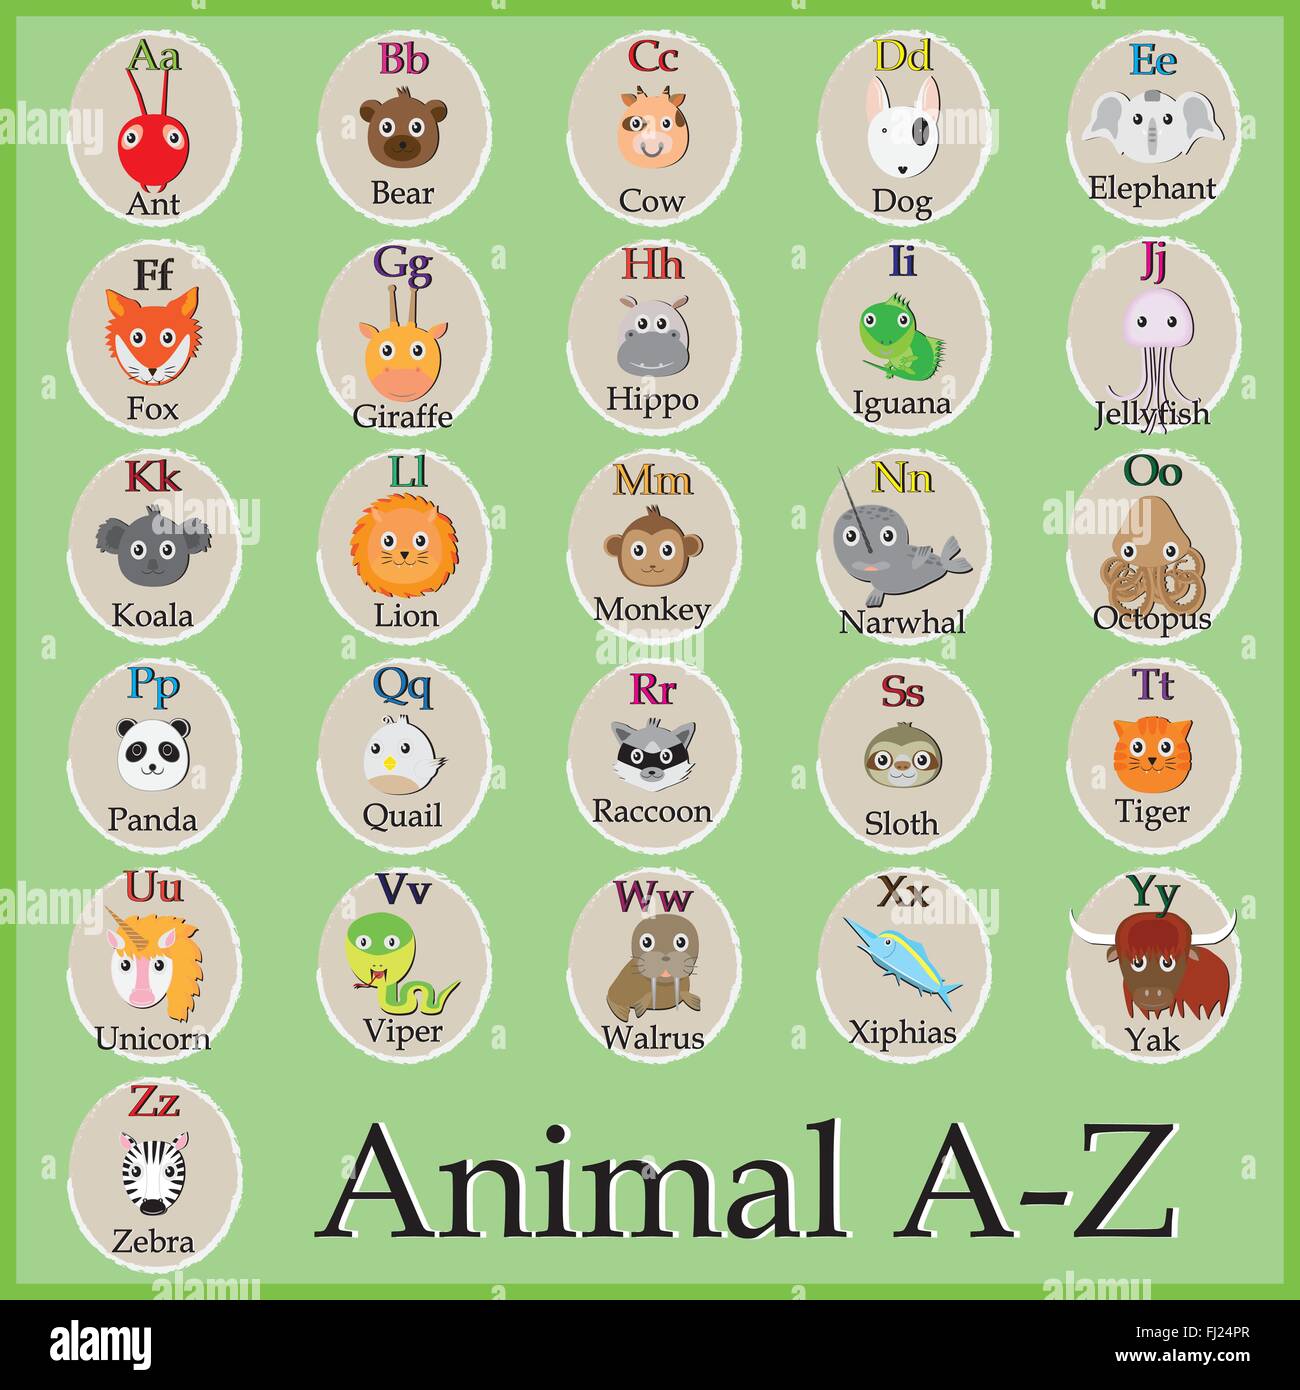 Alfabeto De Animalitos Graciosos Gracioso Personaje De Dibujos Animados A B C D E F G H I J K L M N O P Q R S T U V W